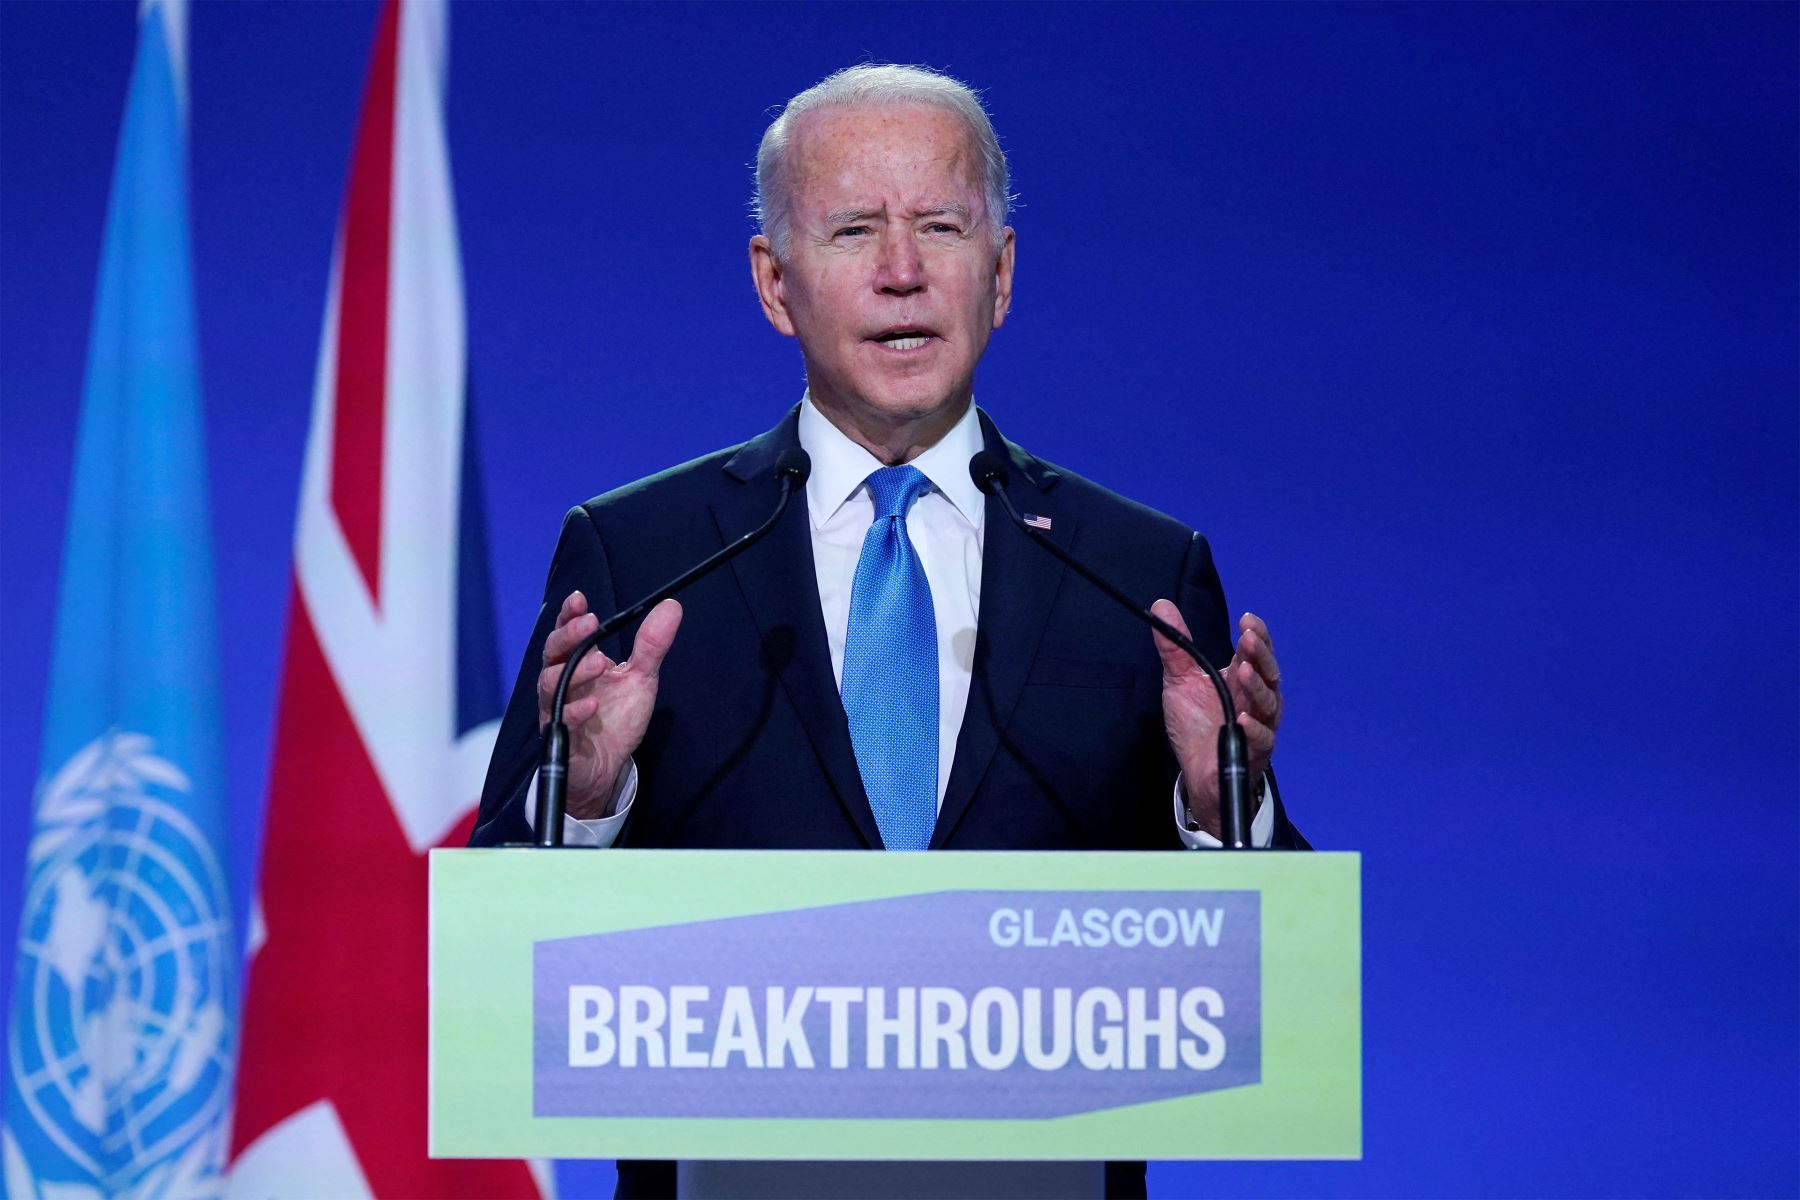 El presidente de los Estados Unidos, Joe Biden, pronuncia un discurso en el escenario durante una reunión, como parte de la Cumbre de Líderes Mundiales de la Conferencia de las Naciones Unidas sobre el Cambio Climático COP26 en Glasgow, Escocia.
Foto: AFP